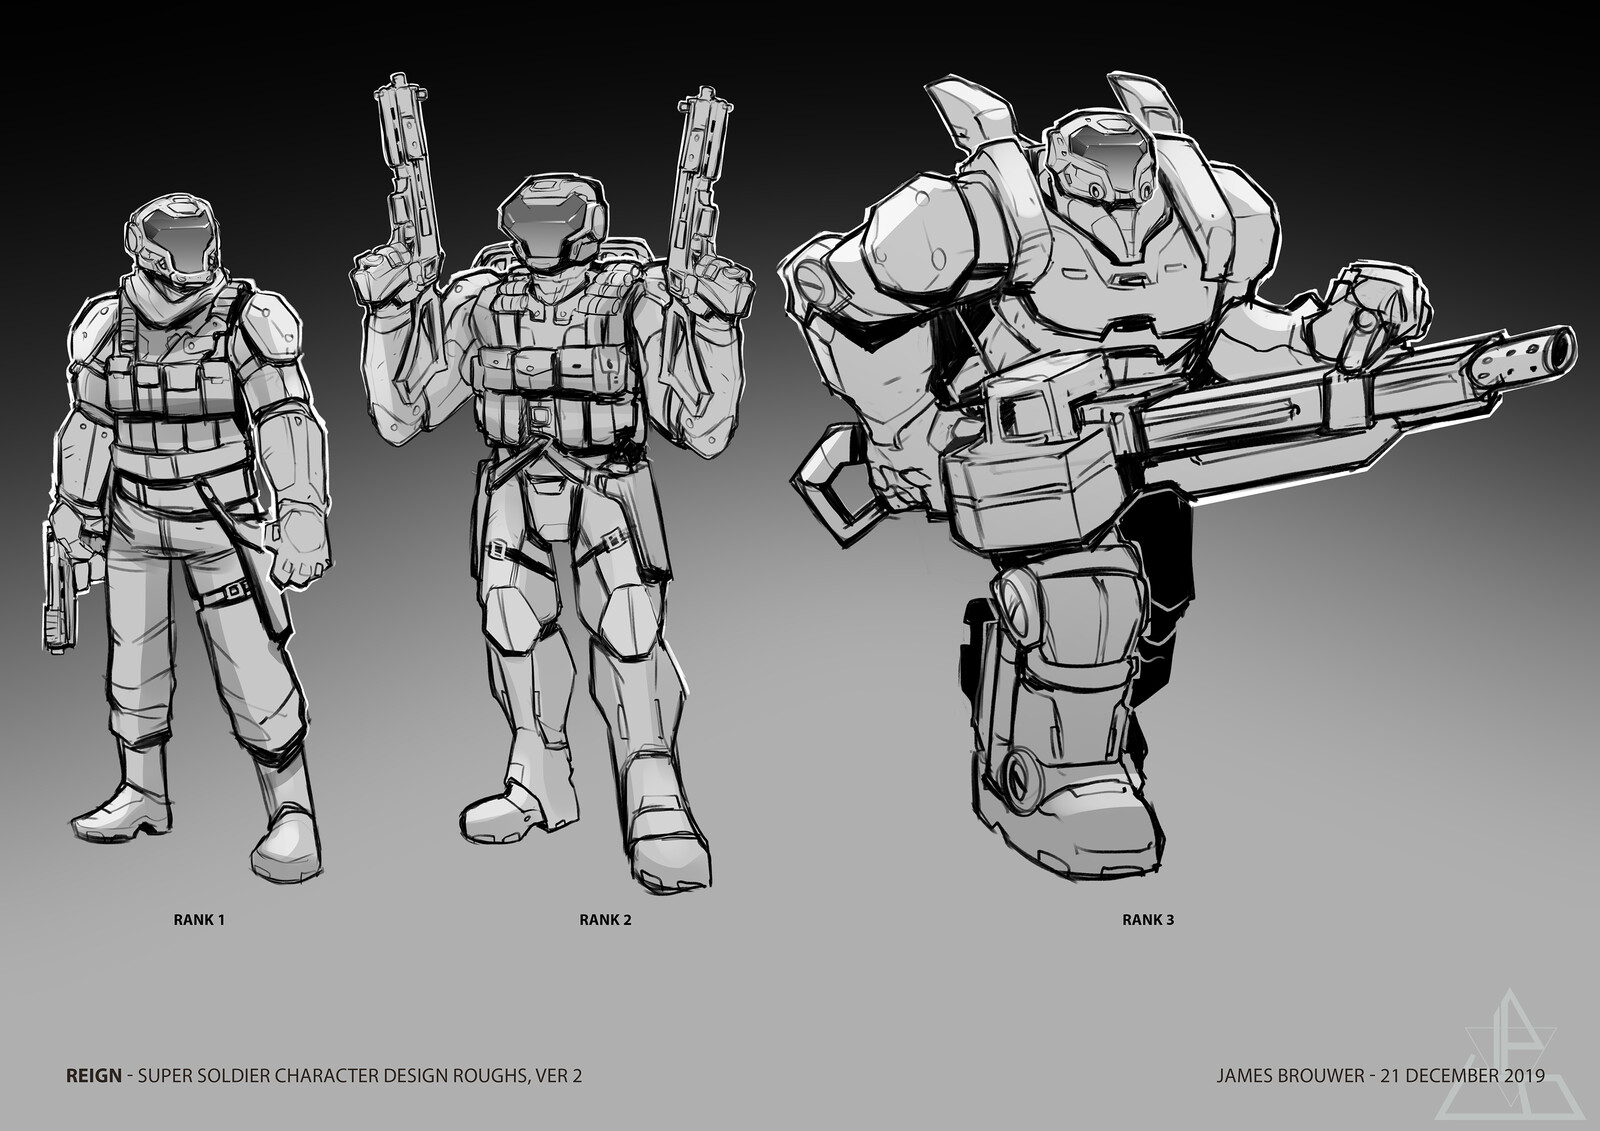 Super Soldiers, version 2.